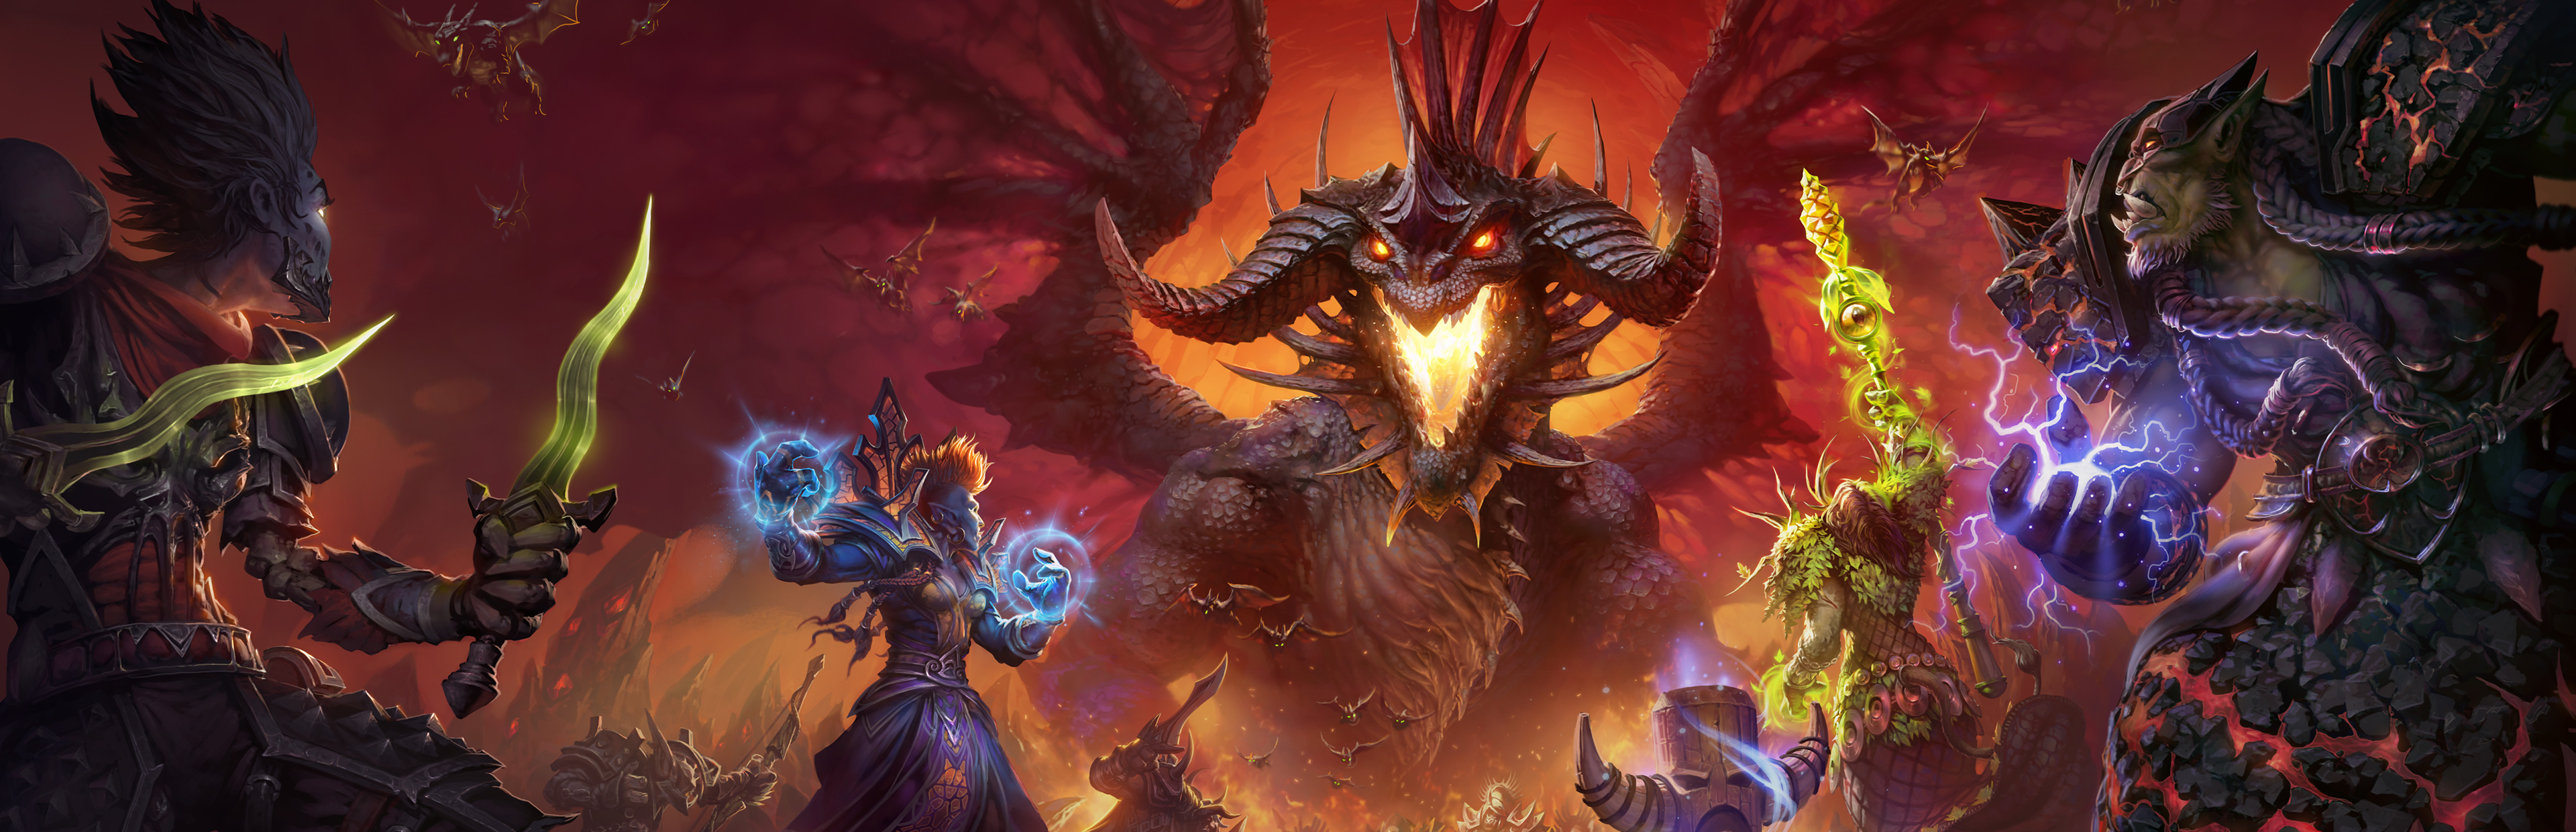 Steam Workshop::Horde 4K - World of Warcraft, horde 